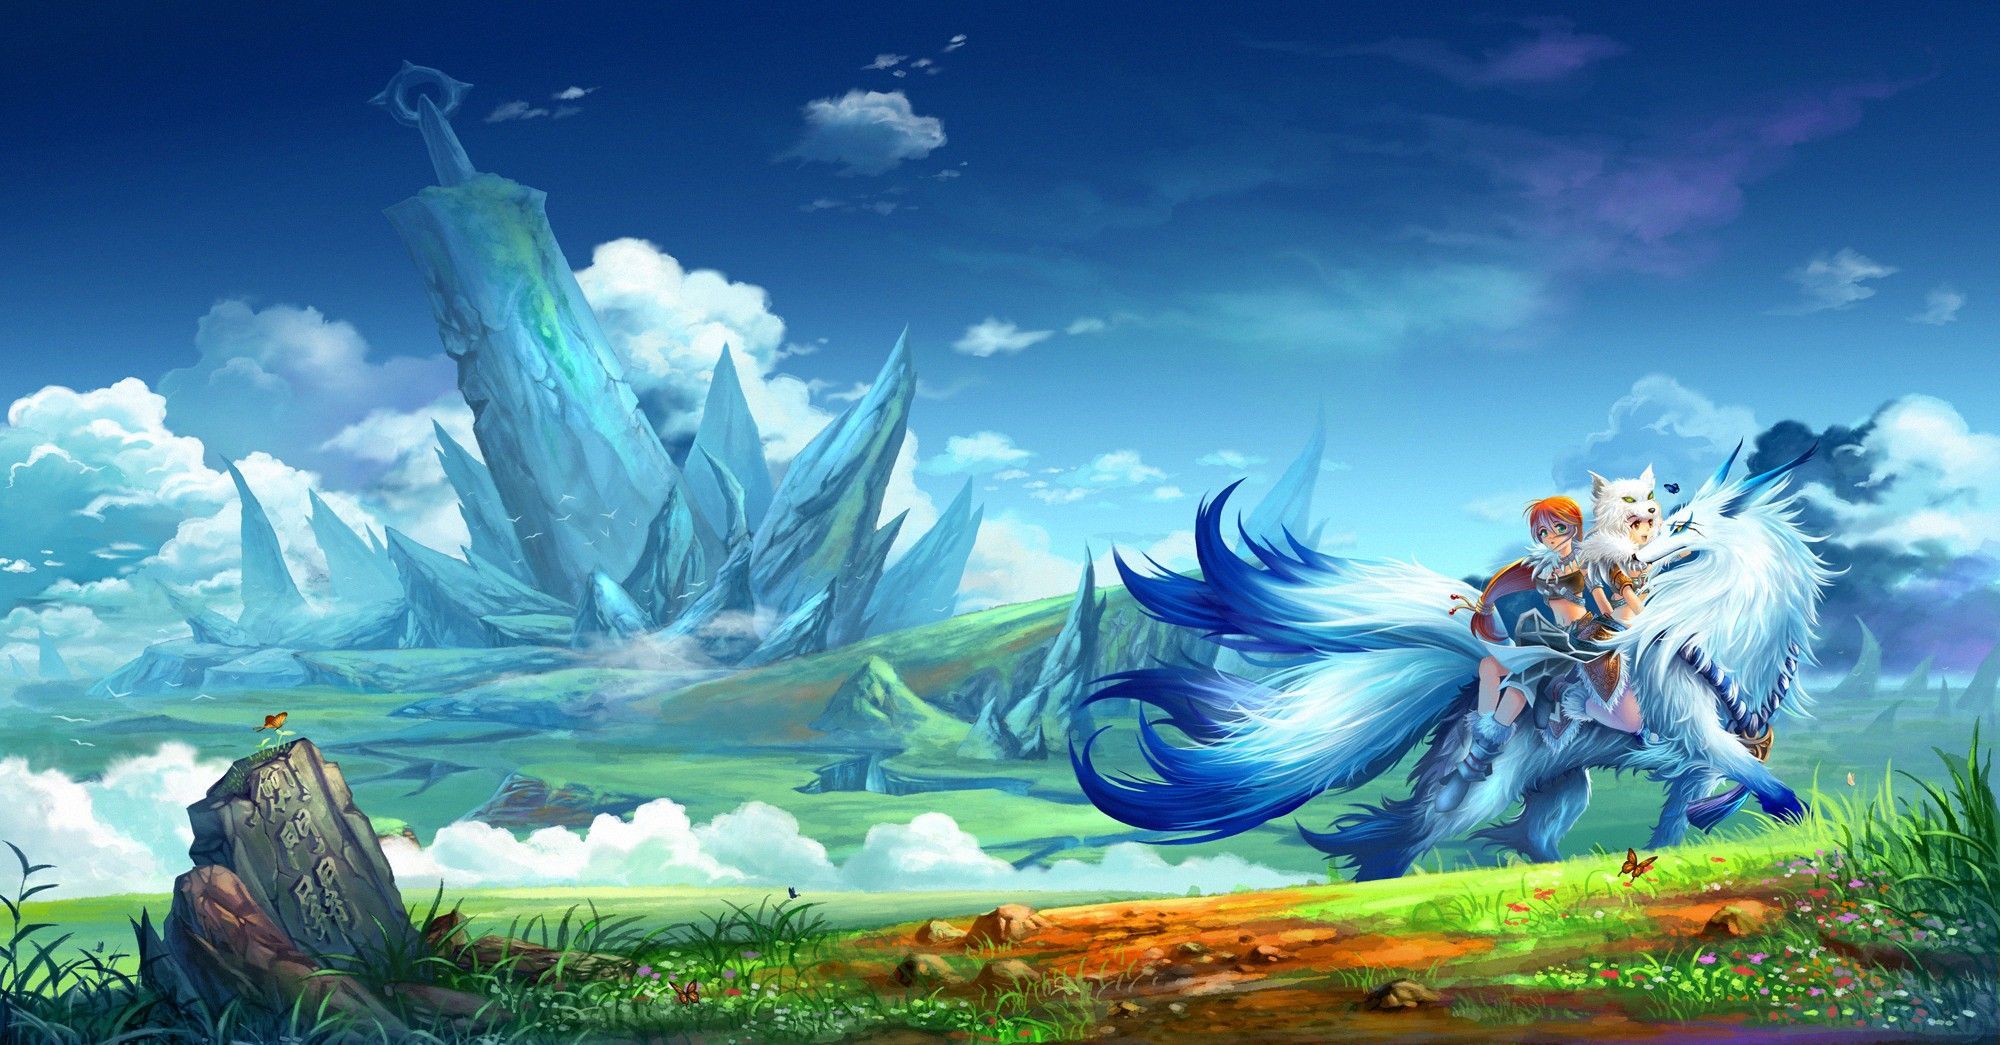 Anime Fantasy Landscape Wallpapers gratis como fondo de pantalla HD | Fondos de pantalla